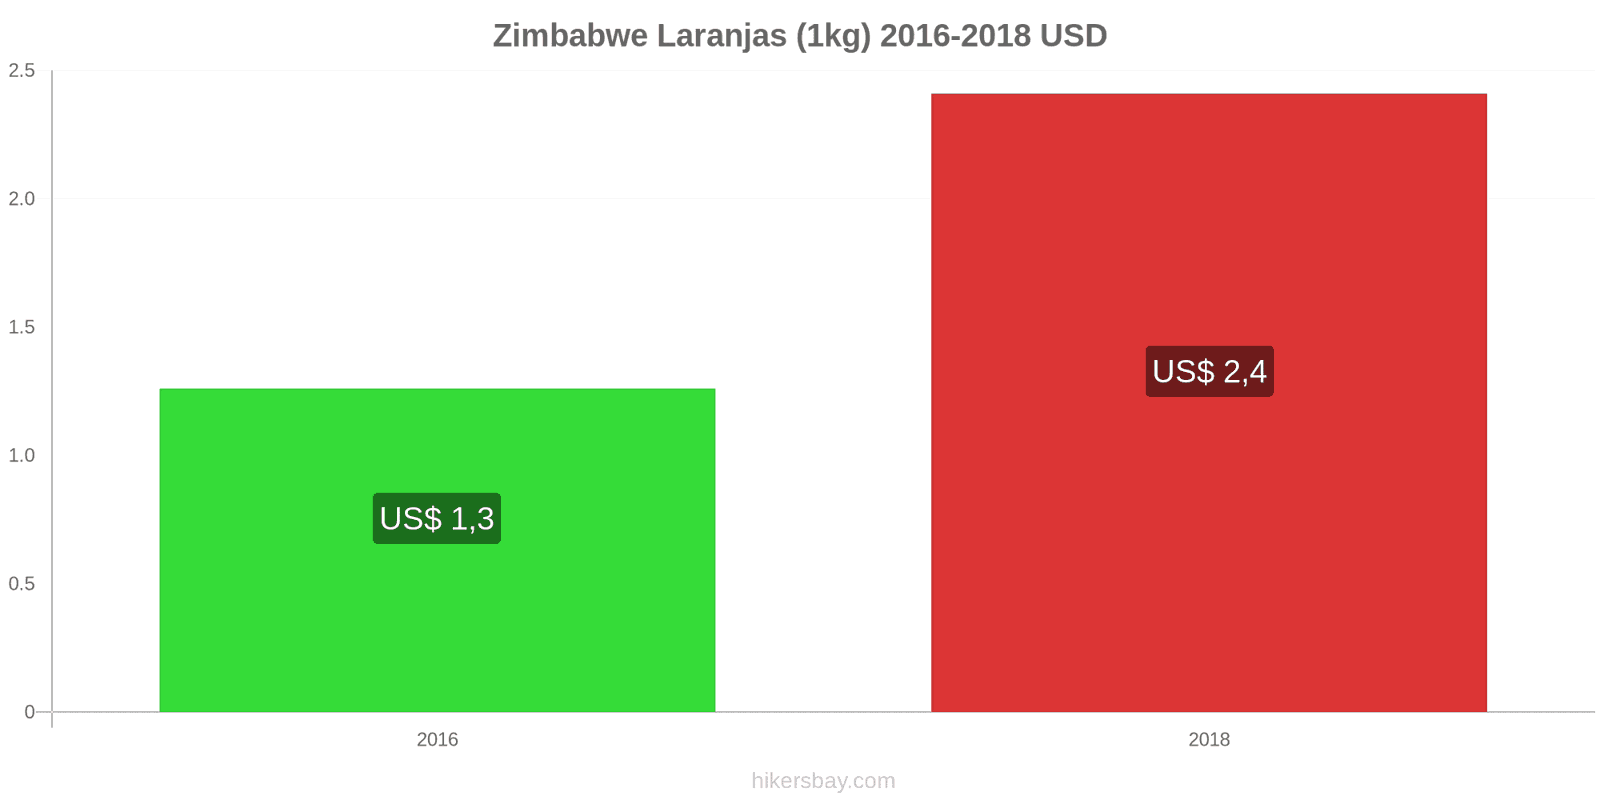 Zimbabwe mudanças de preços Laranjas (1kg) hikersbay.com